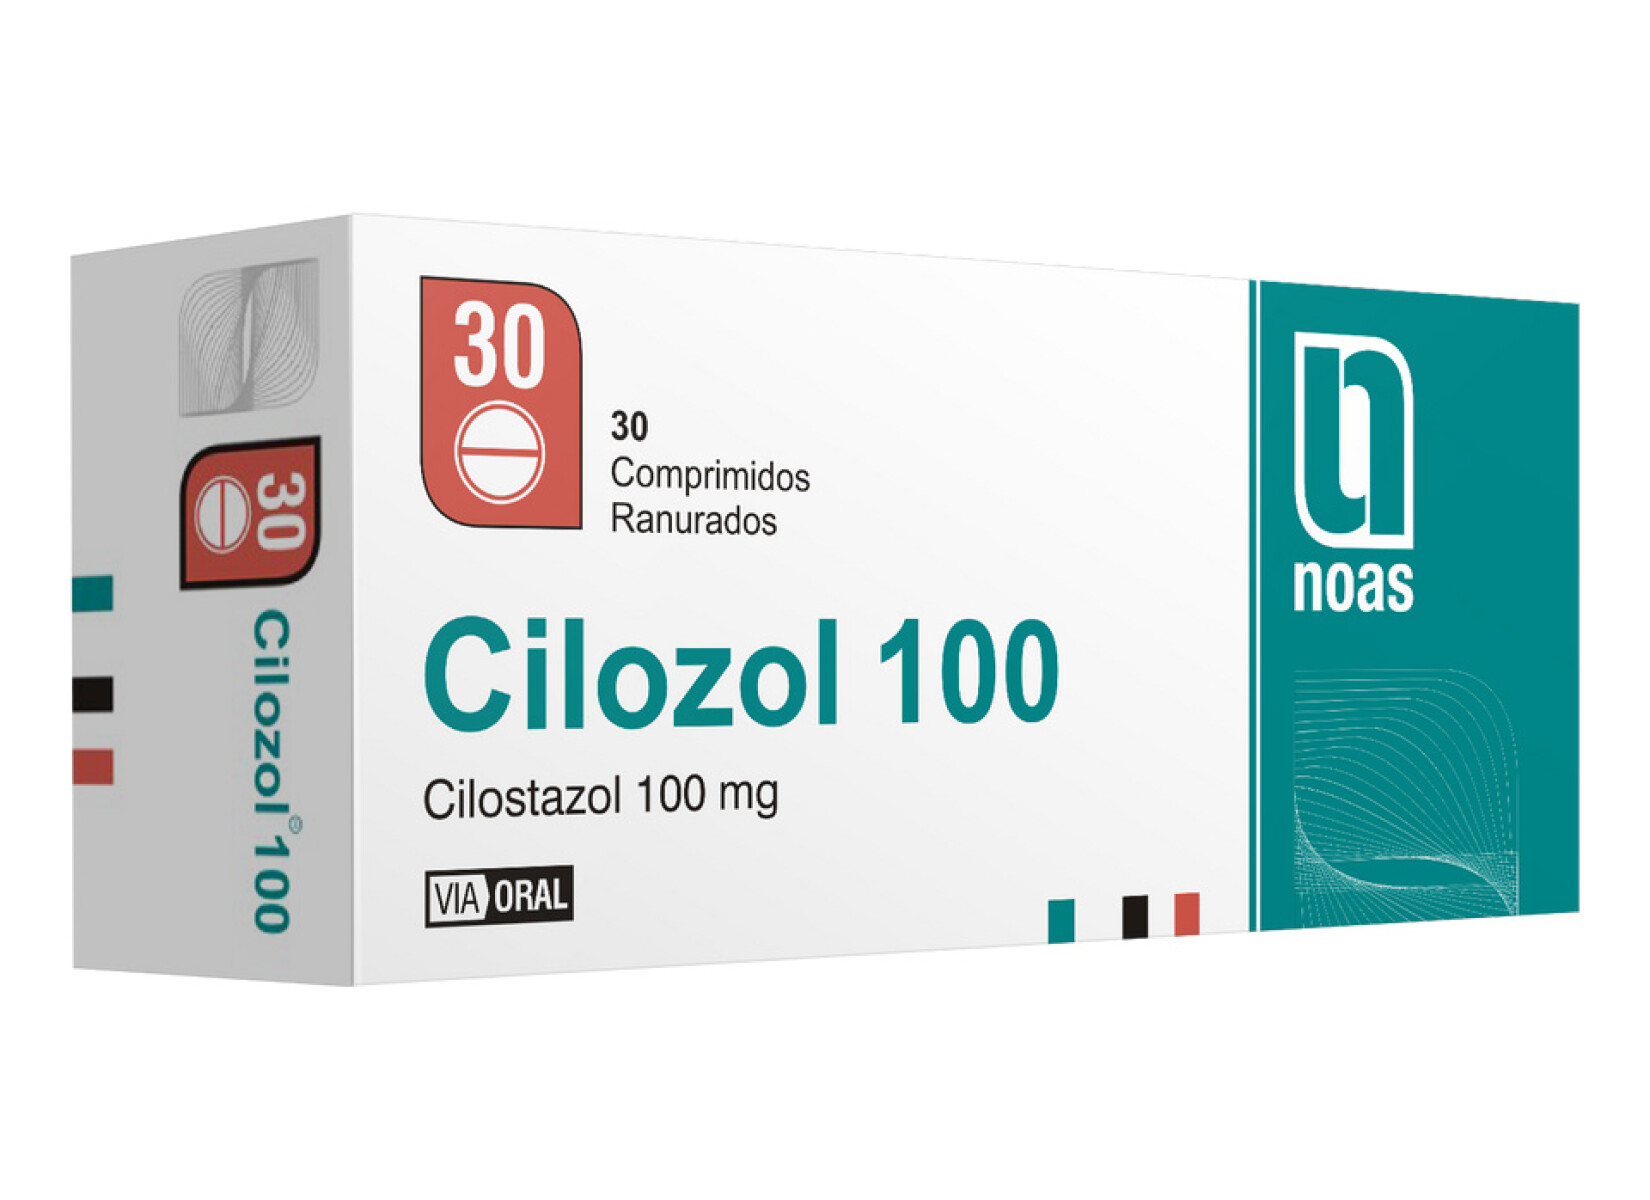 Cilozol 100 